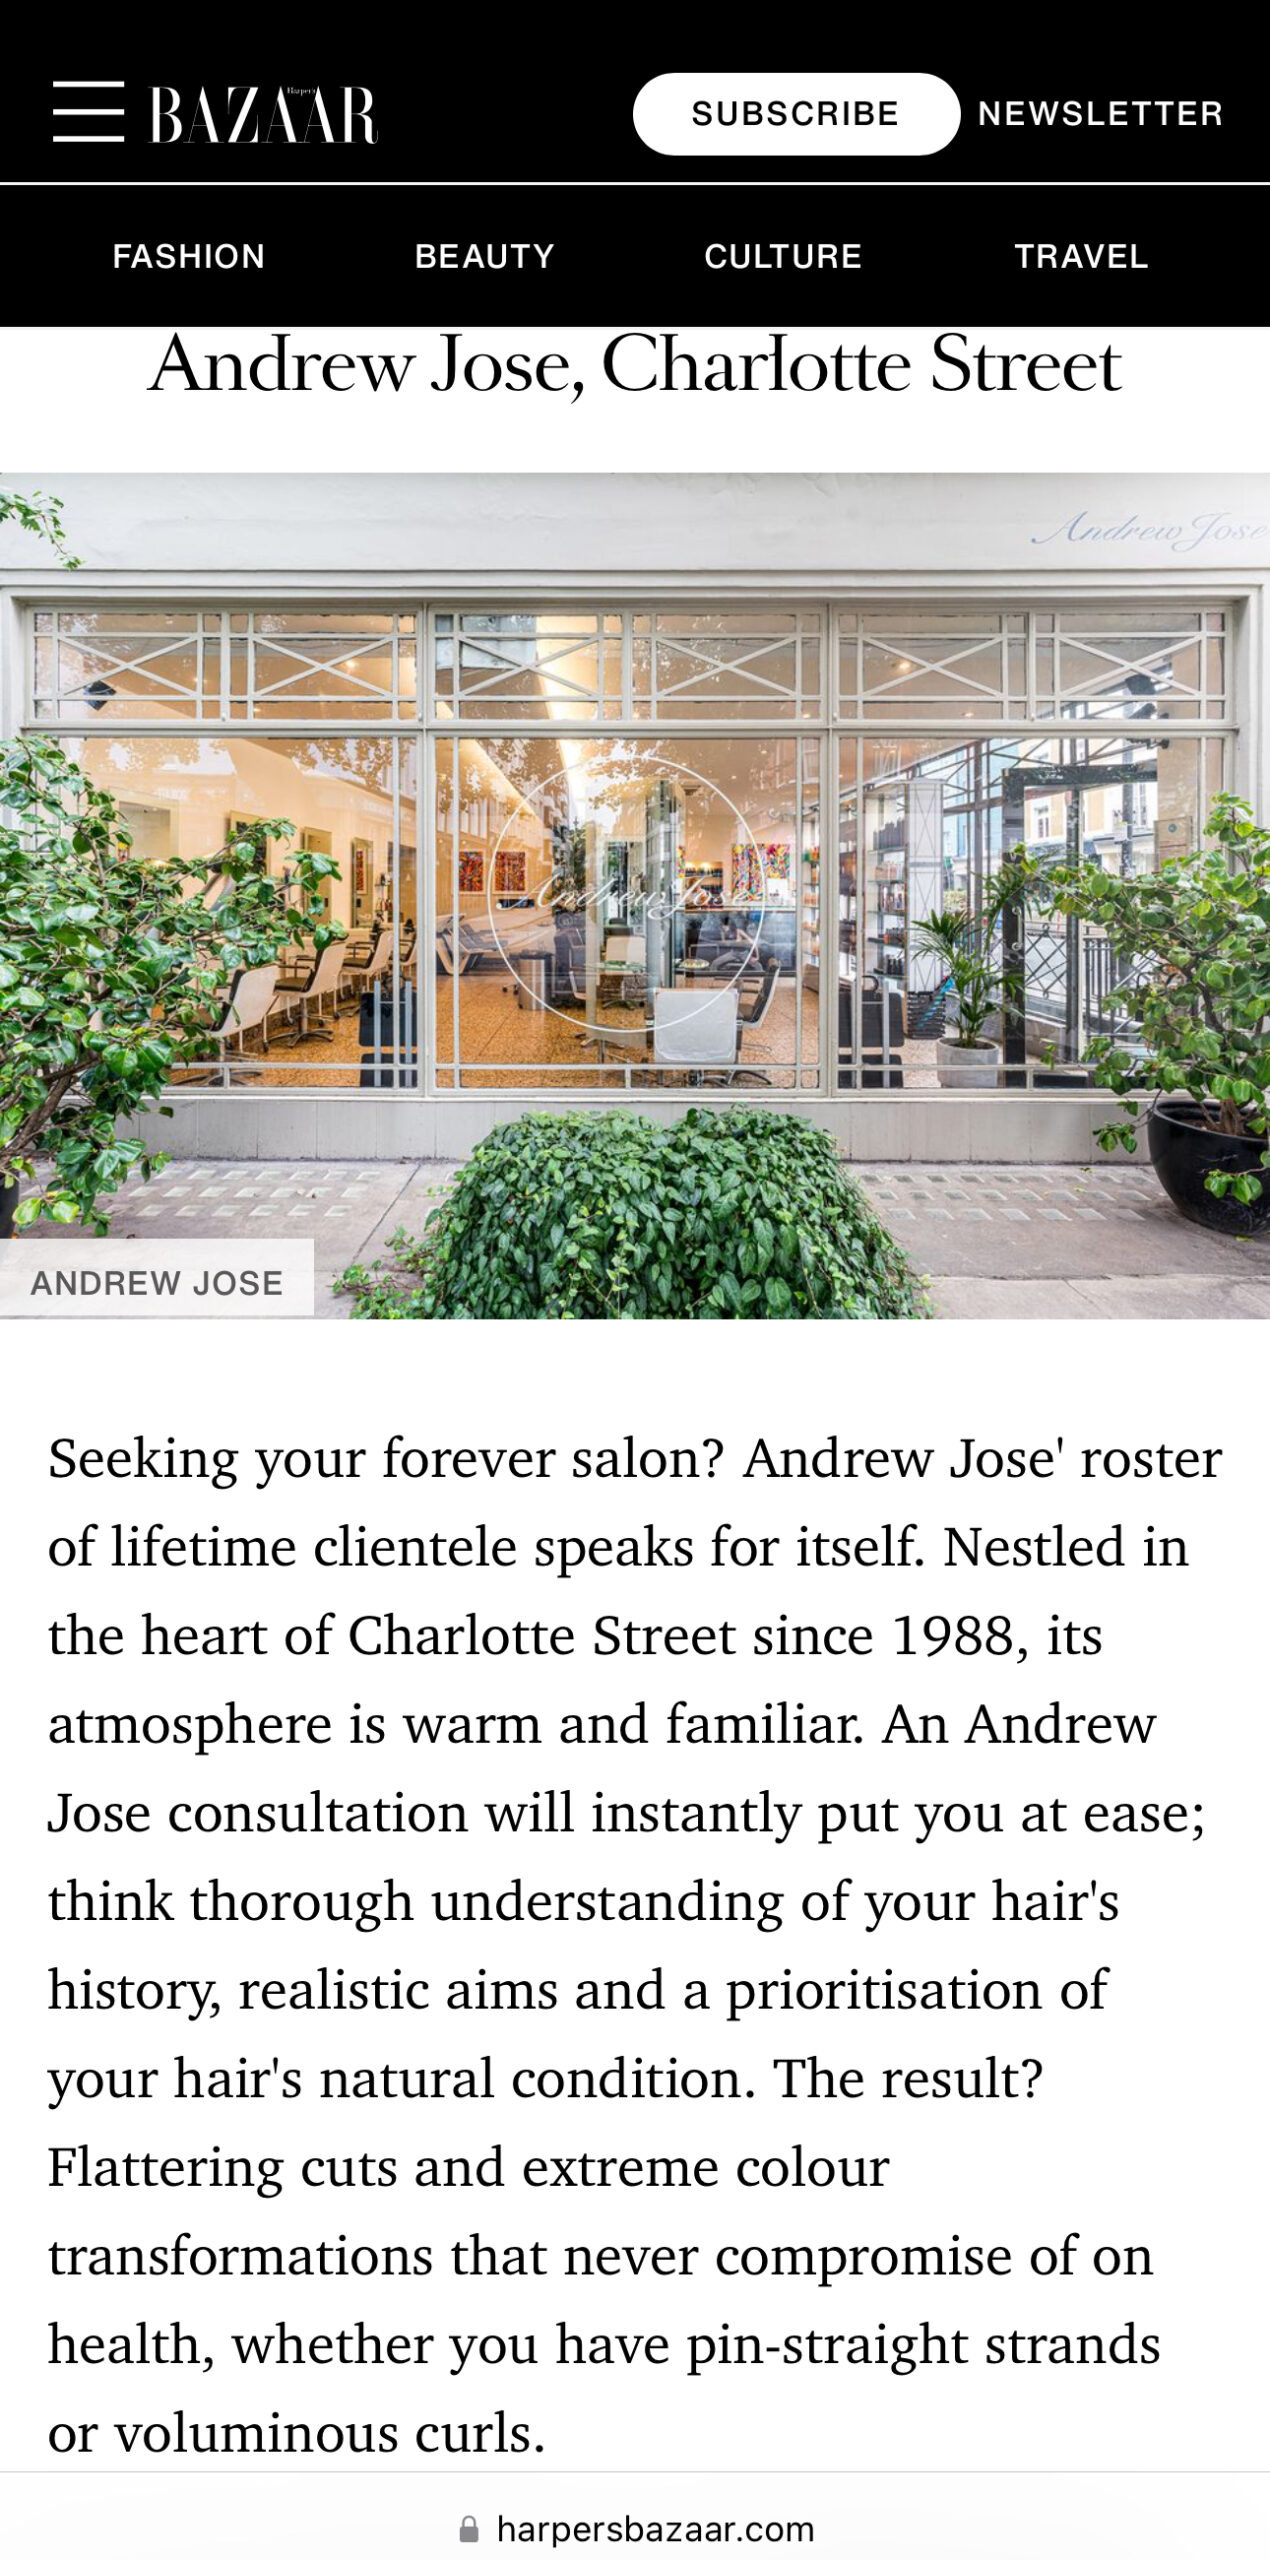 Andrew Jose Salon in Harper’s Bazaar